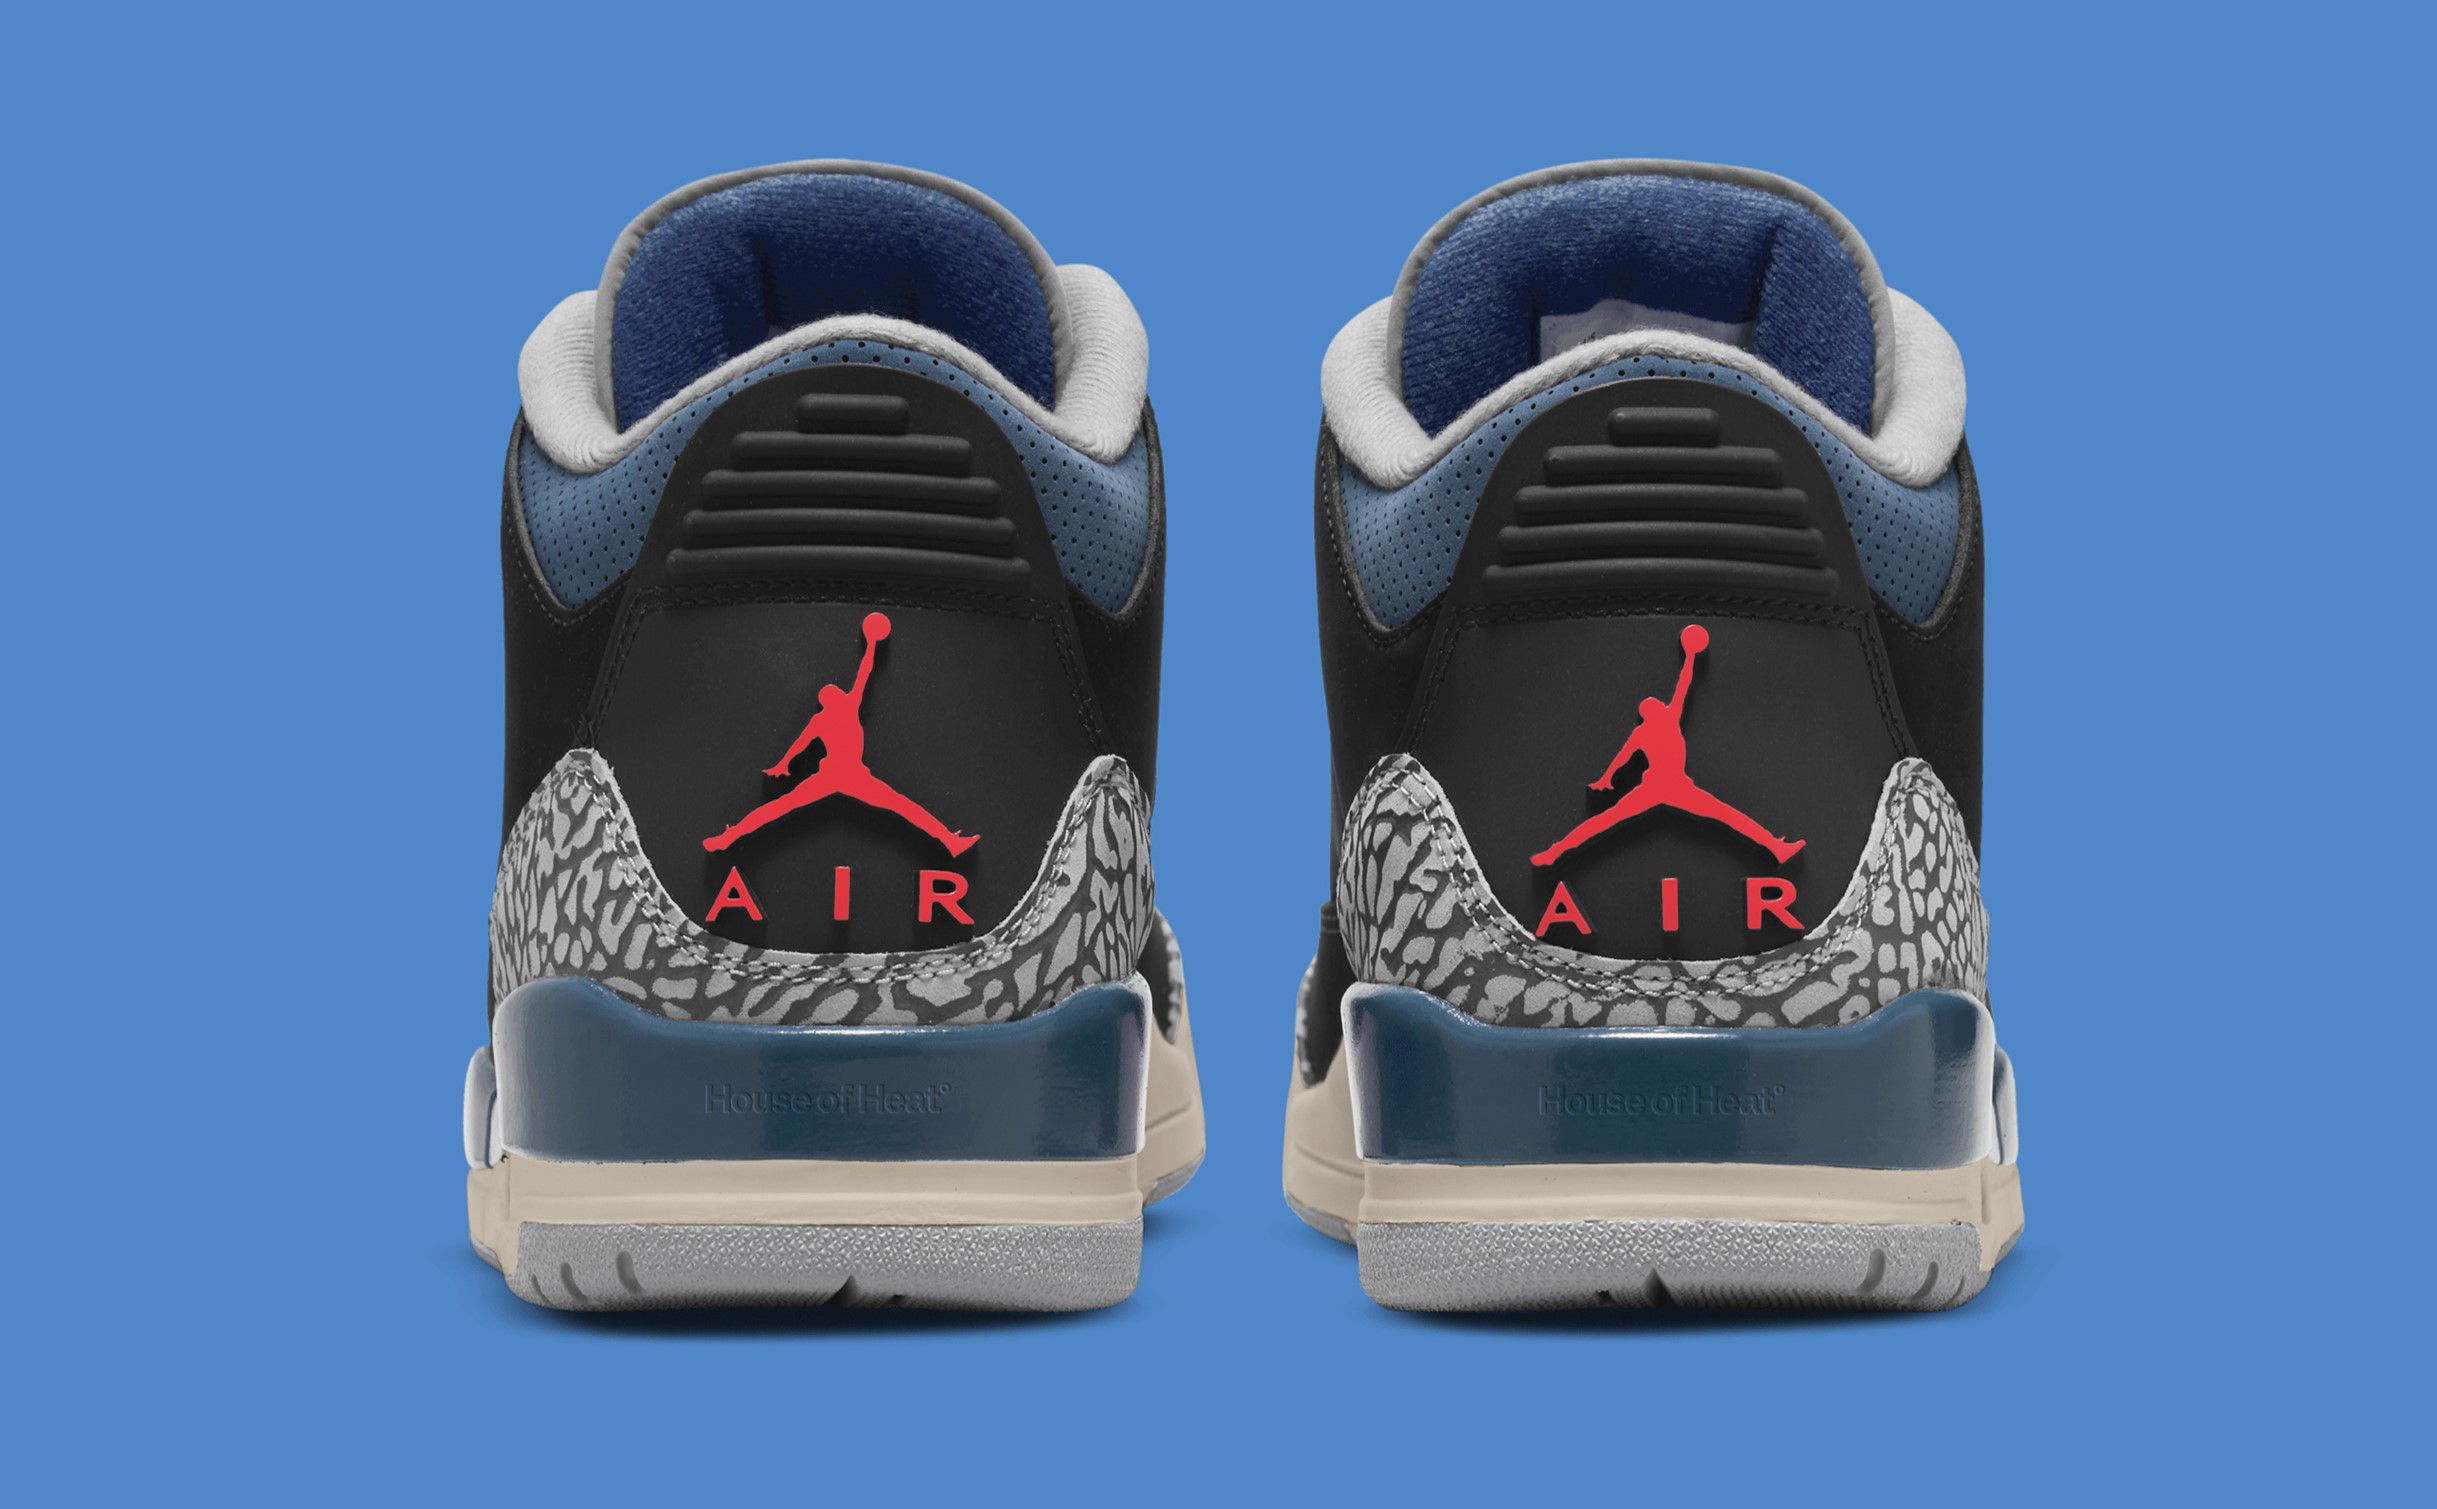 Air Jordan 3 "Black Military Blue" Release Links